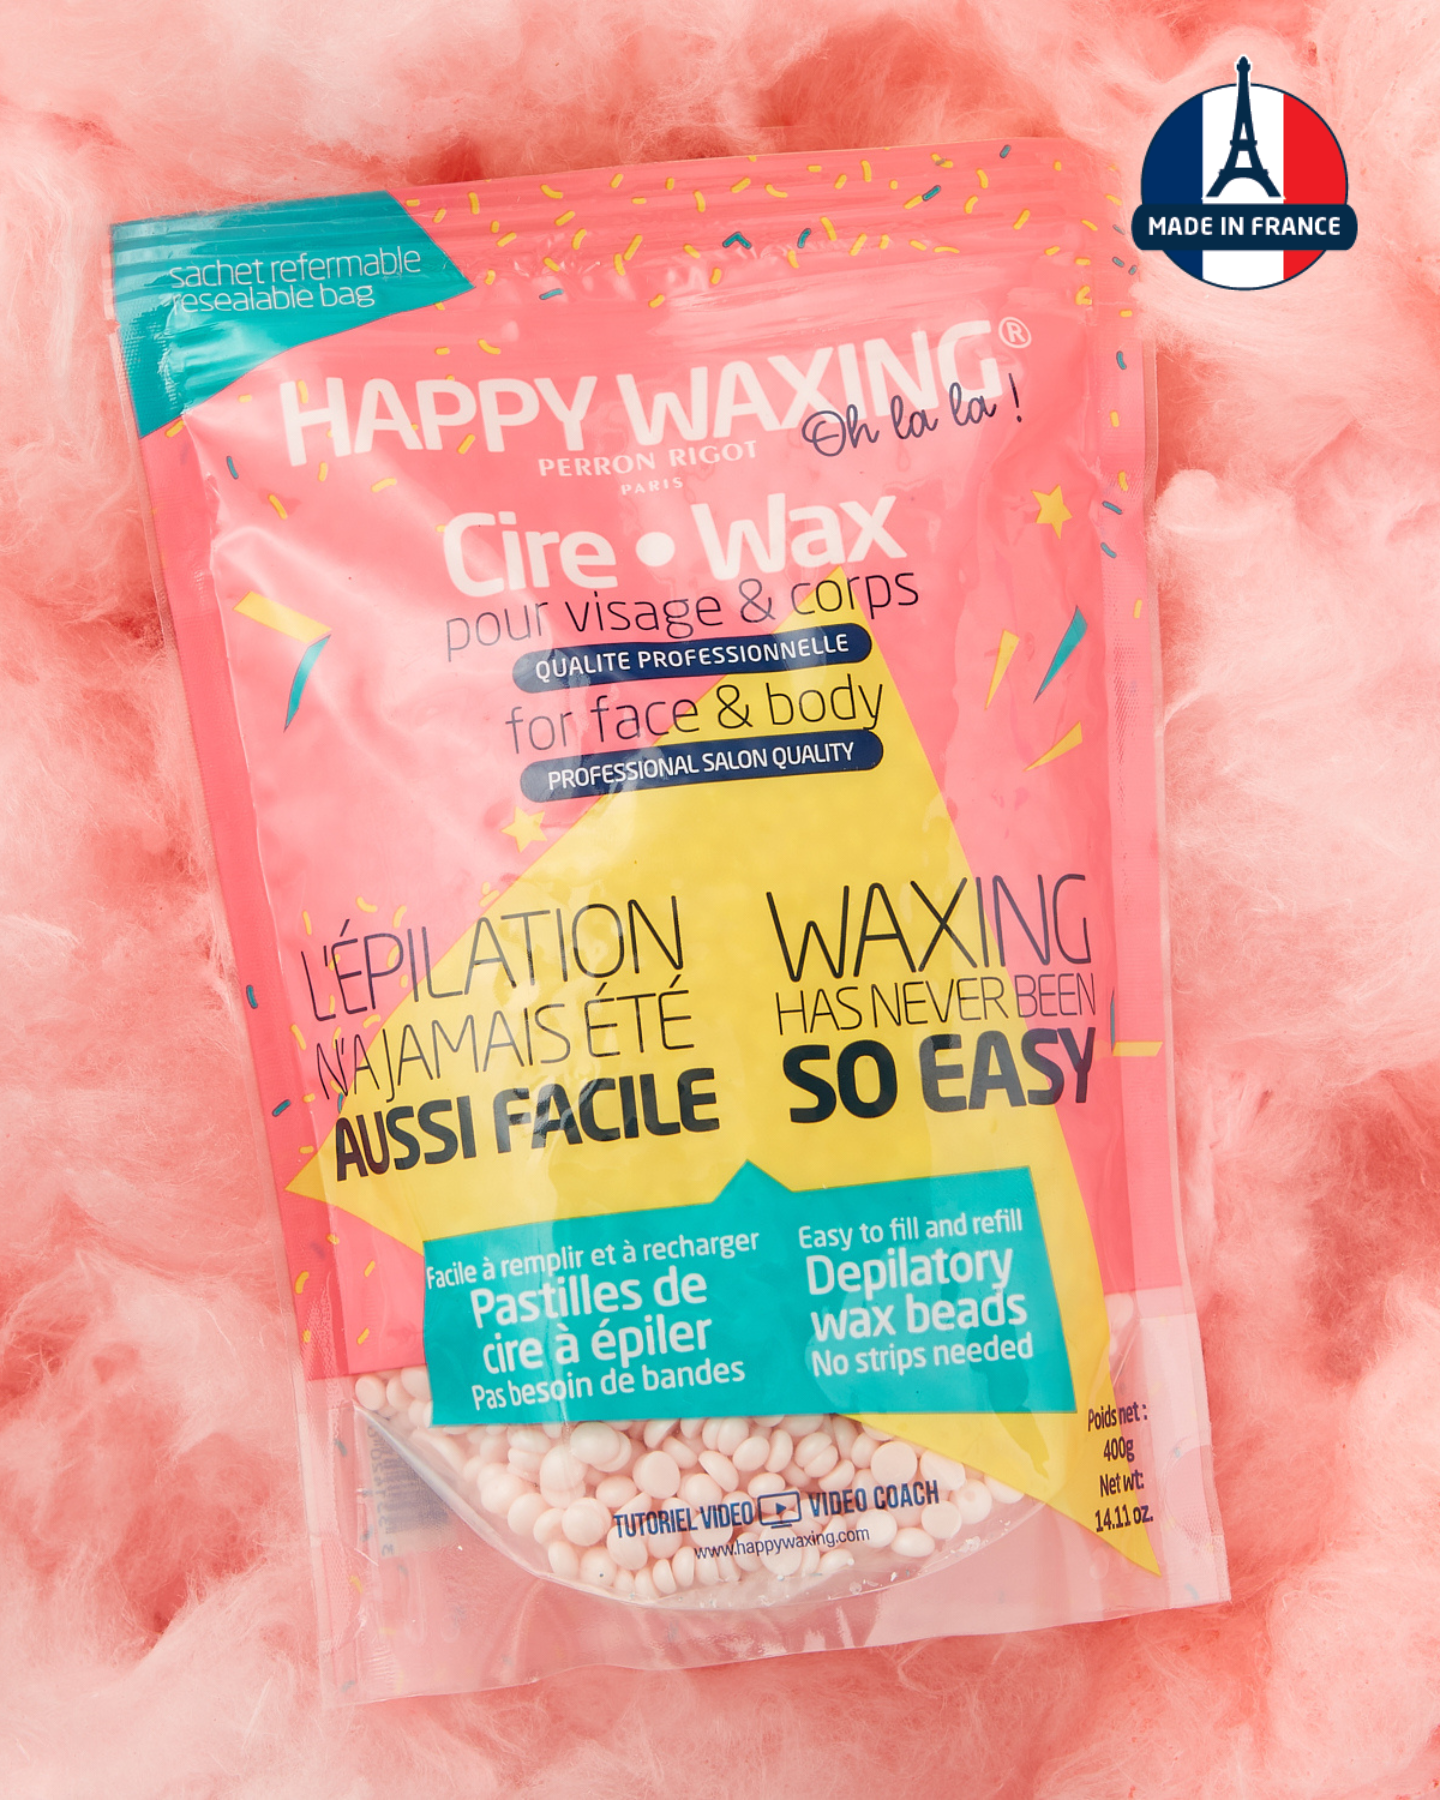 Welcome to Happy Wax Rewards Program - Happy Wax